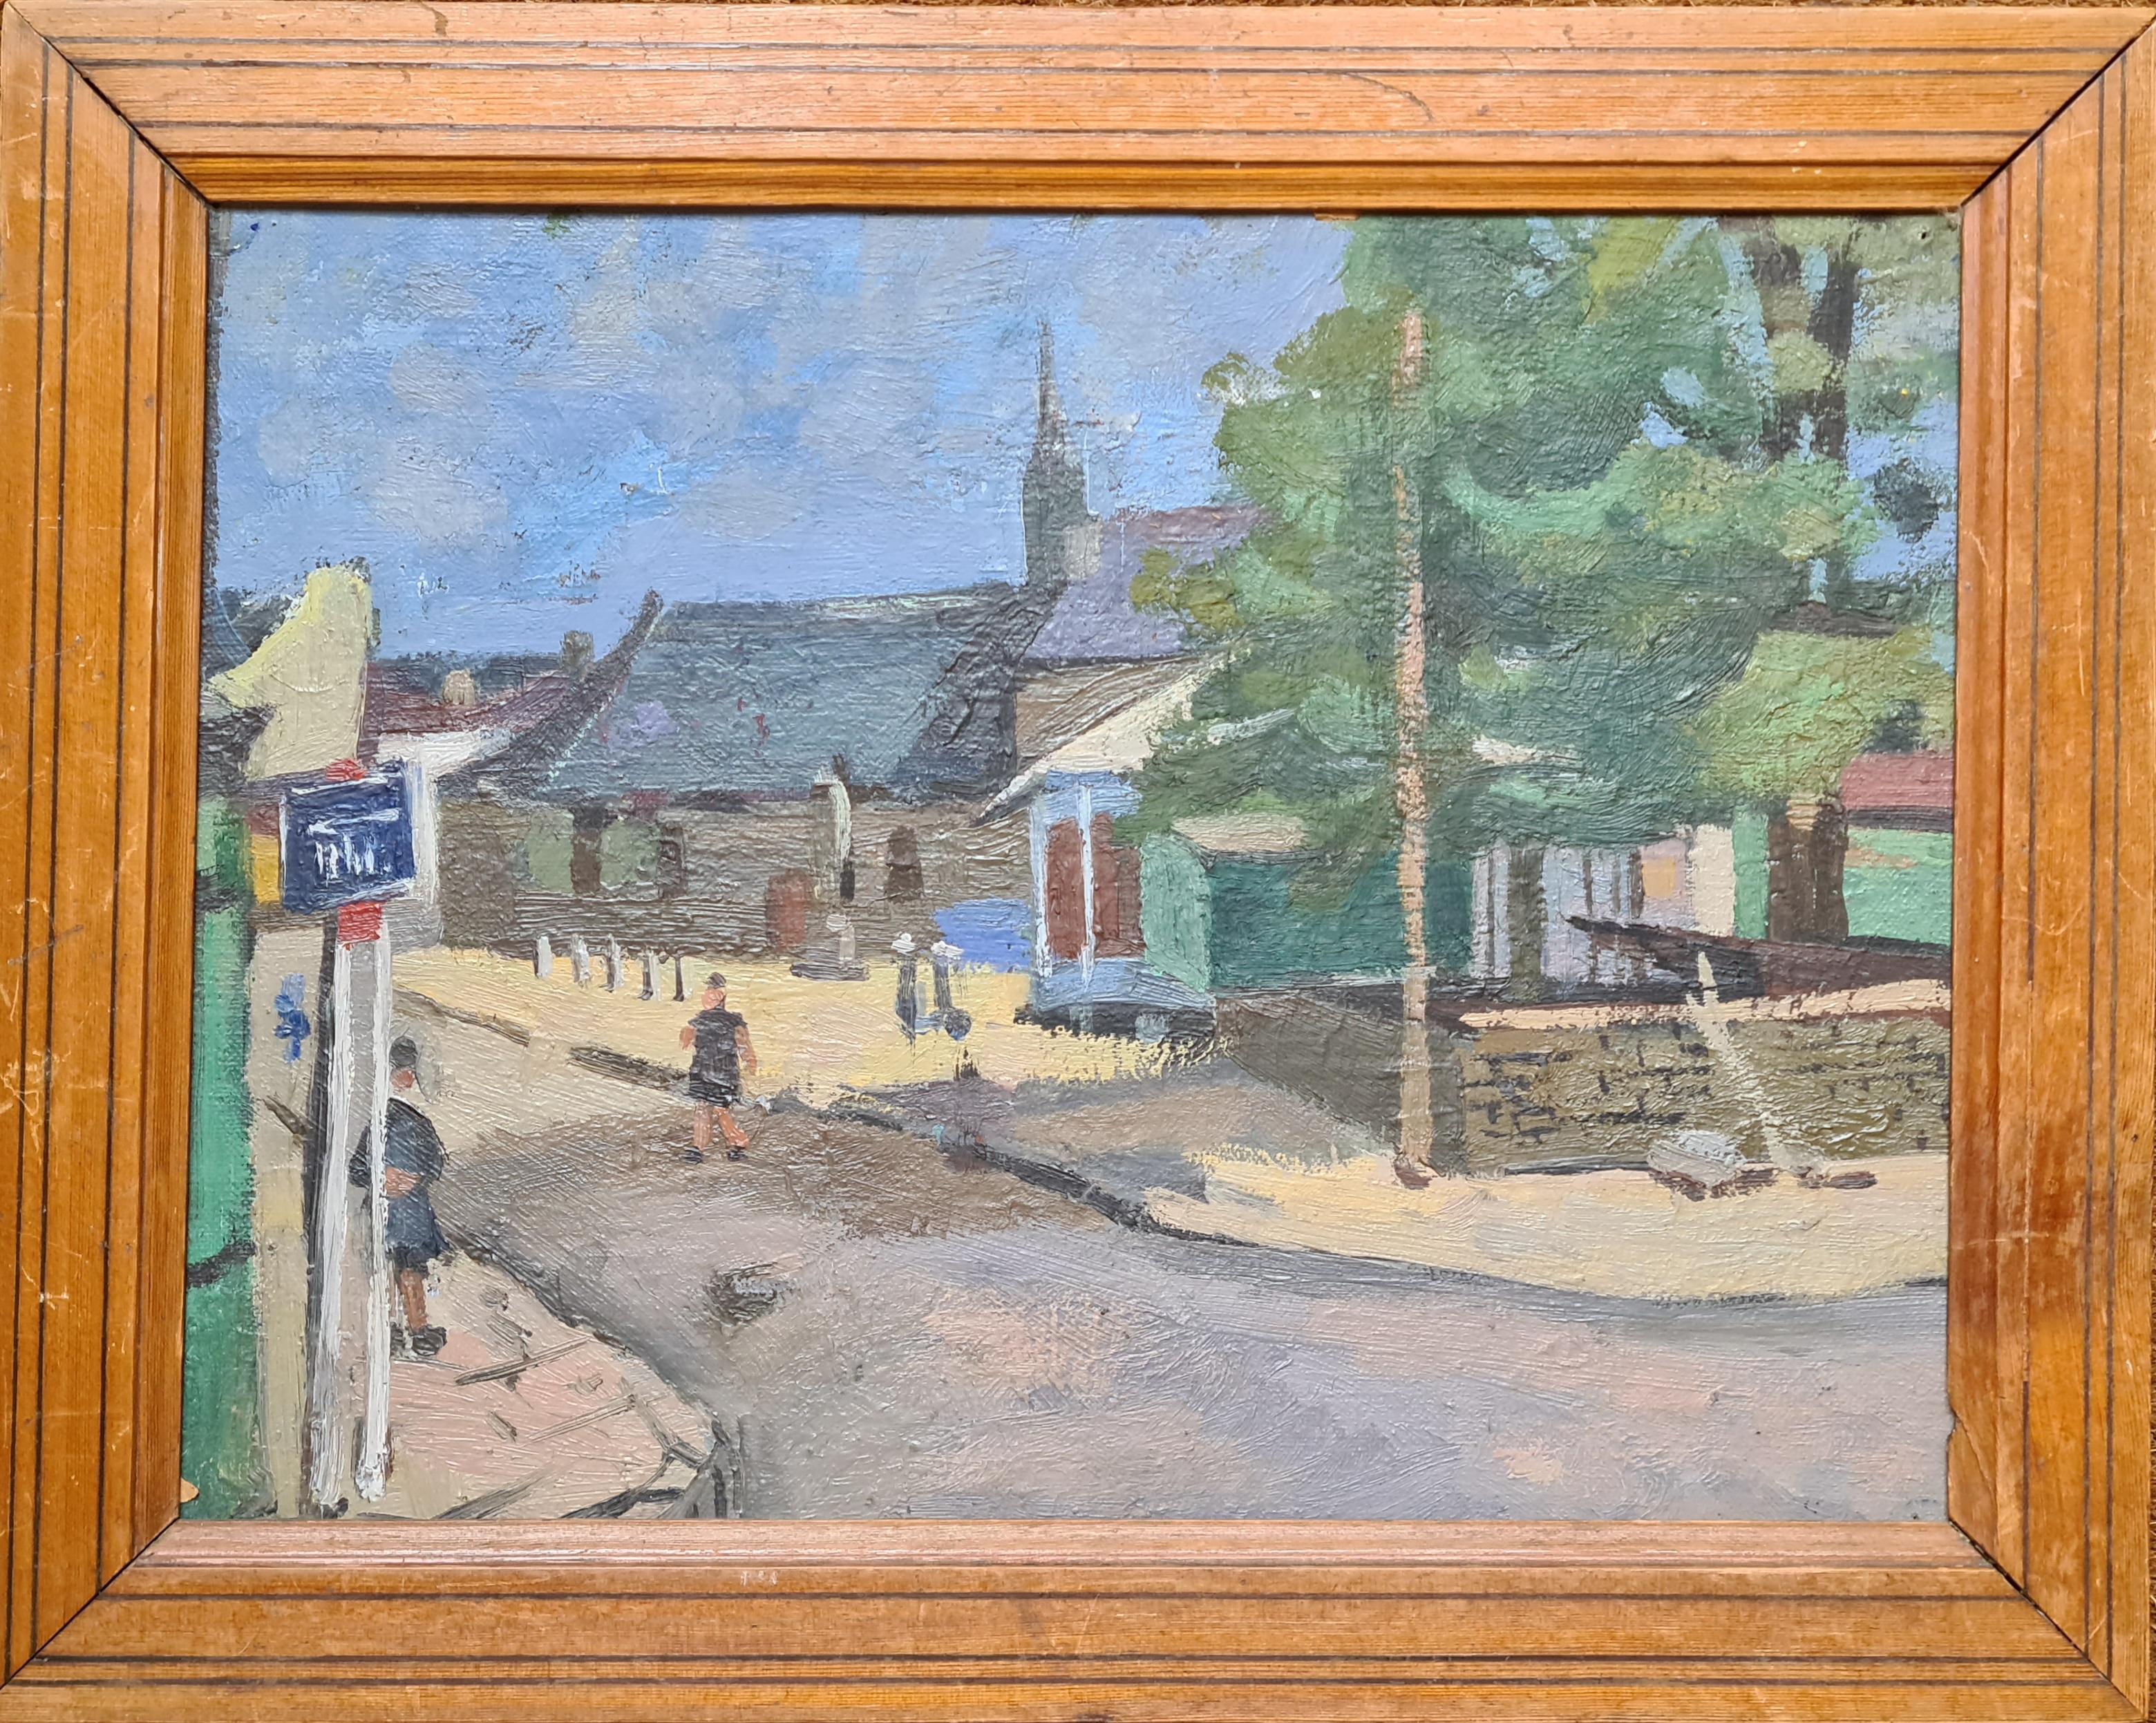 Ghislaine de Fiquelmont Landscape Painting - The French Village, Mid Century Villagescape